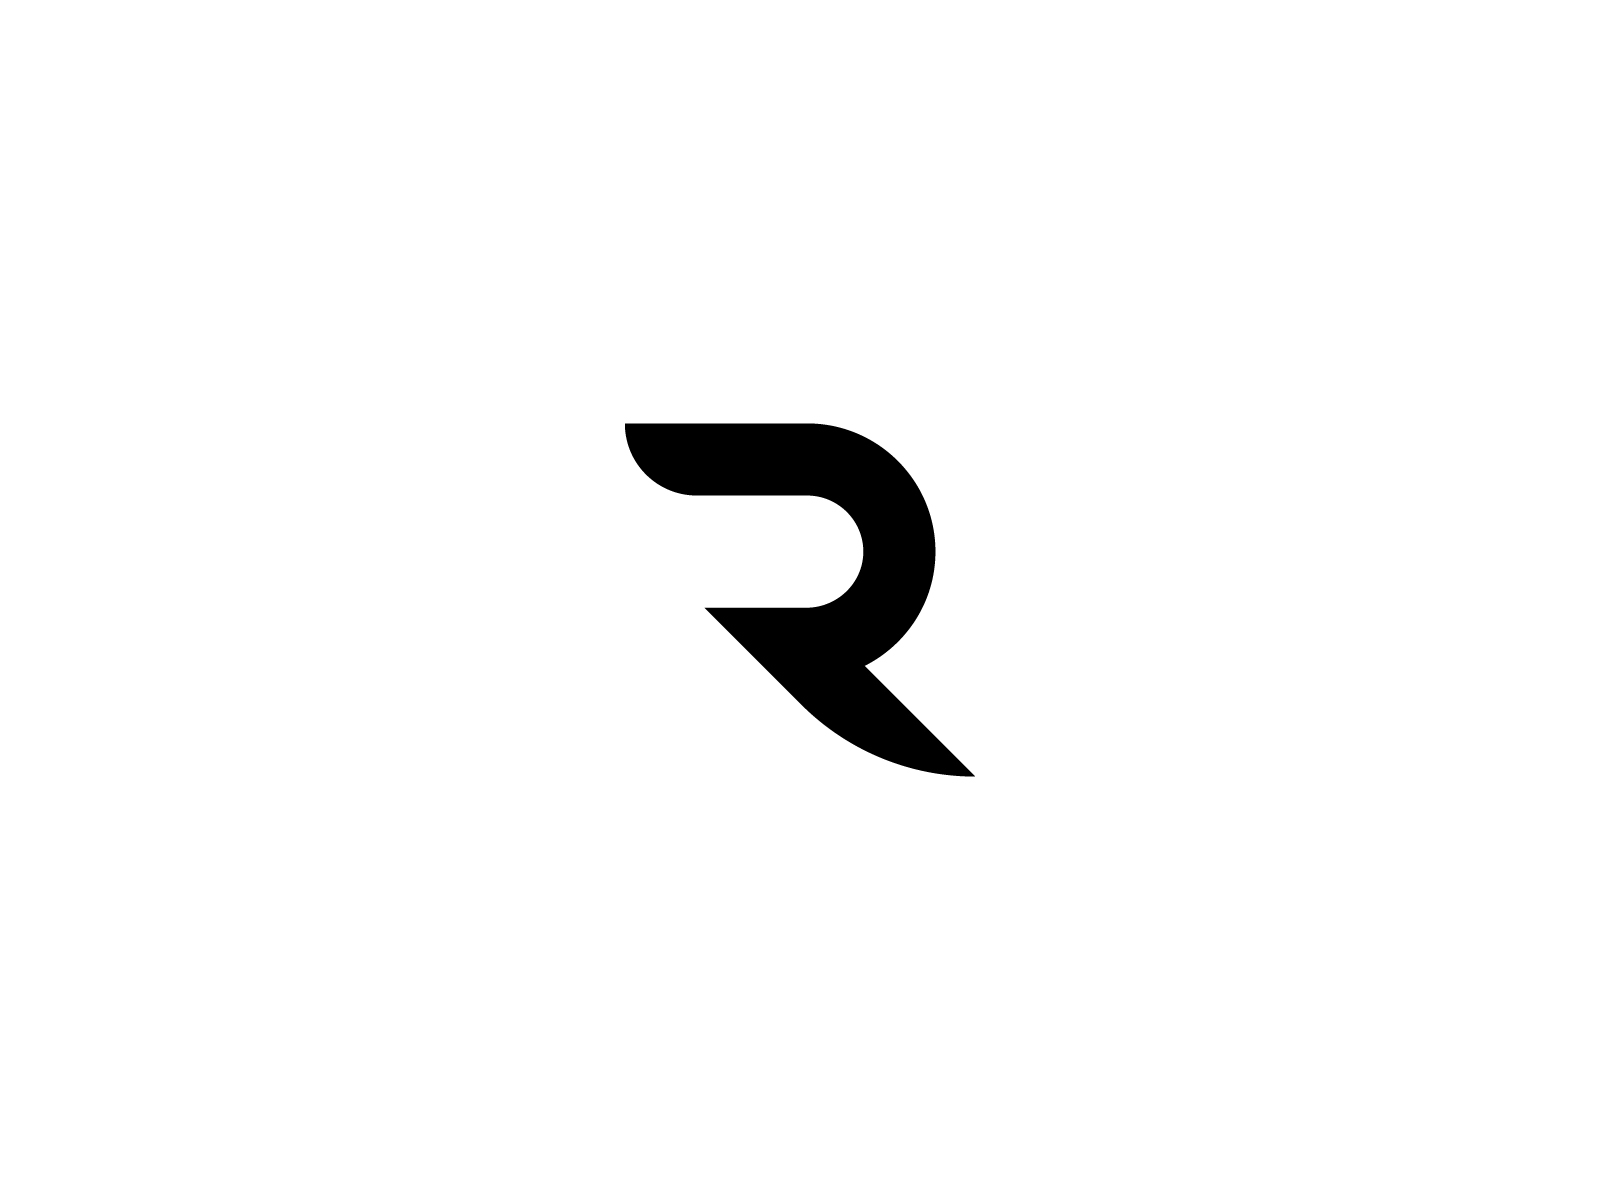 Logo chữ R của Rohmatul Insan trên Dribbble là một trong những mẫu thiết kế logo ấn tượng và đầy sáng tạo. Đến với hình ảnh này, bạn sẽ được khám phá sự độc đáo và tinh tế trong thiết kế của Rohmatul Insan và logo chữ R của họ.